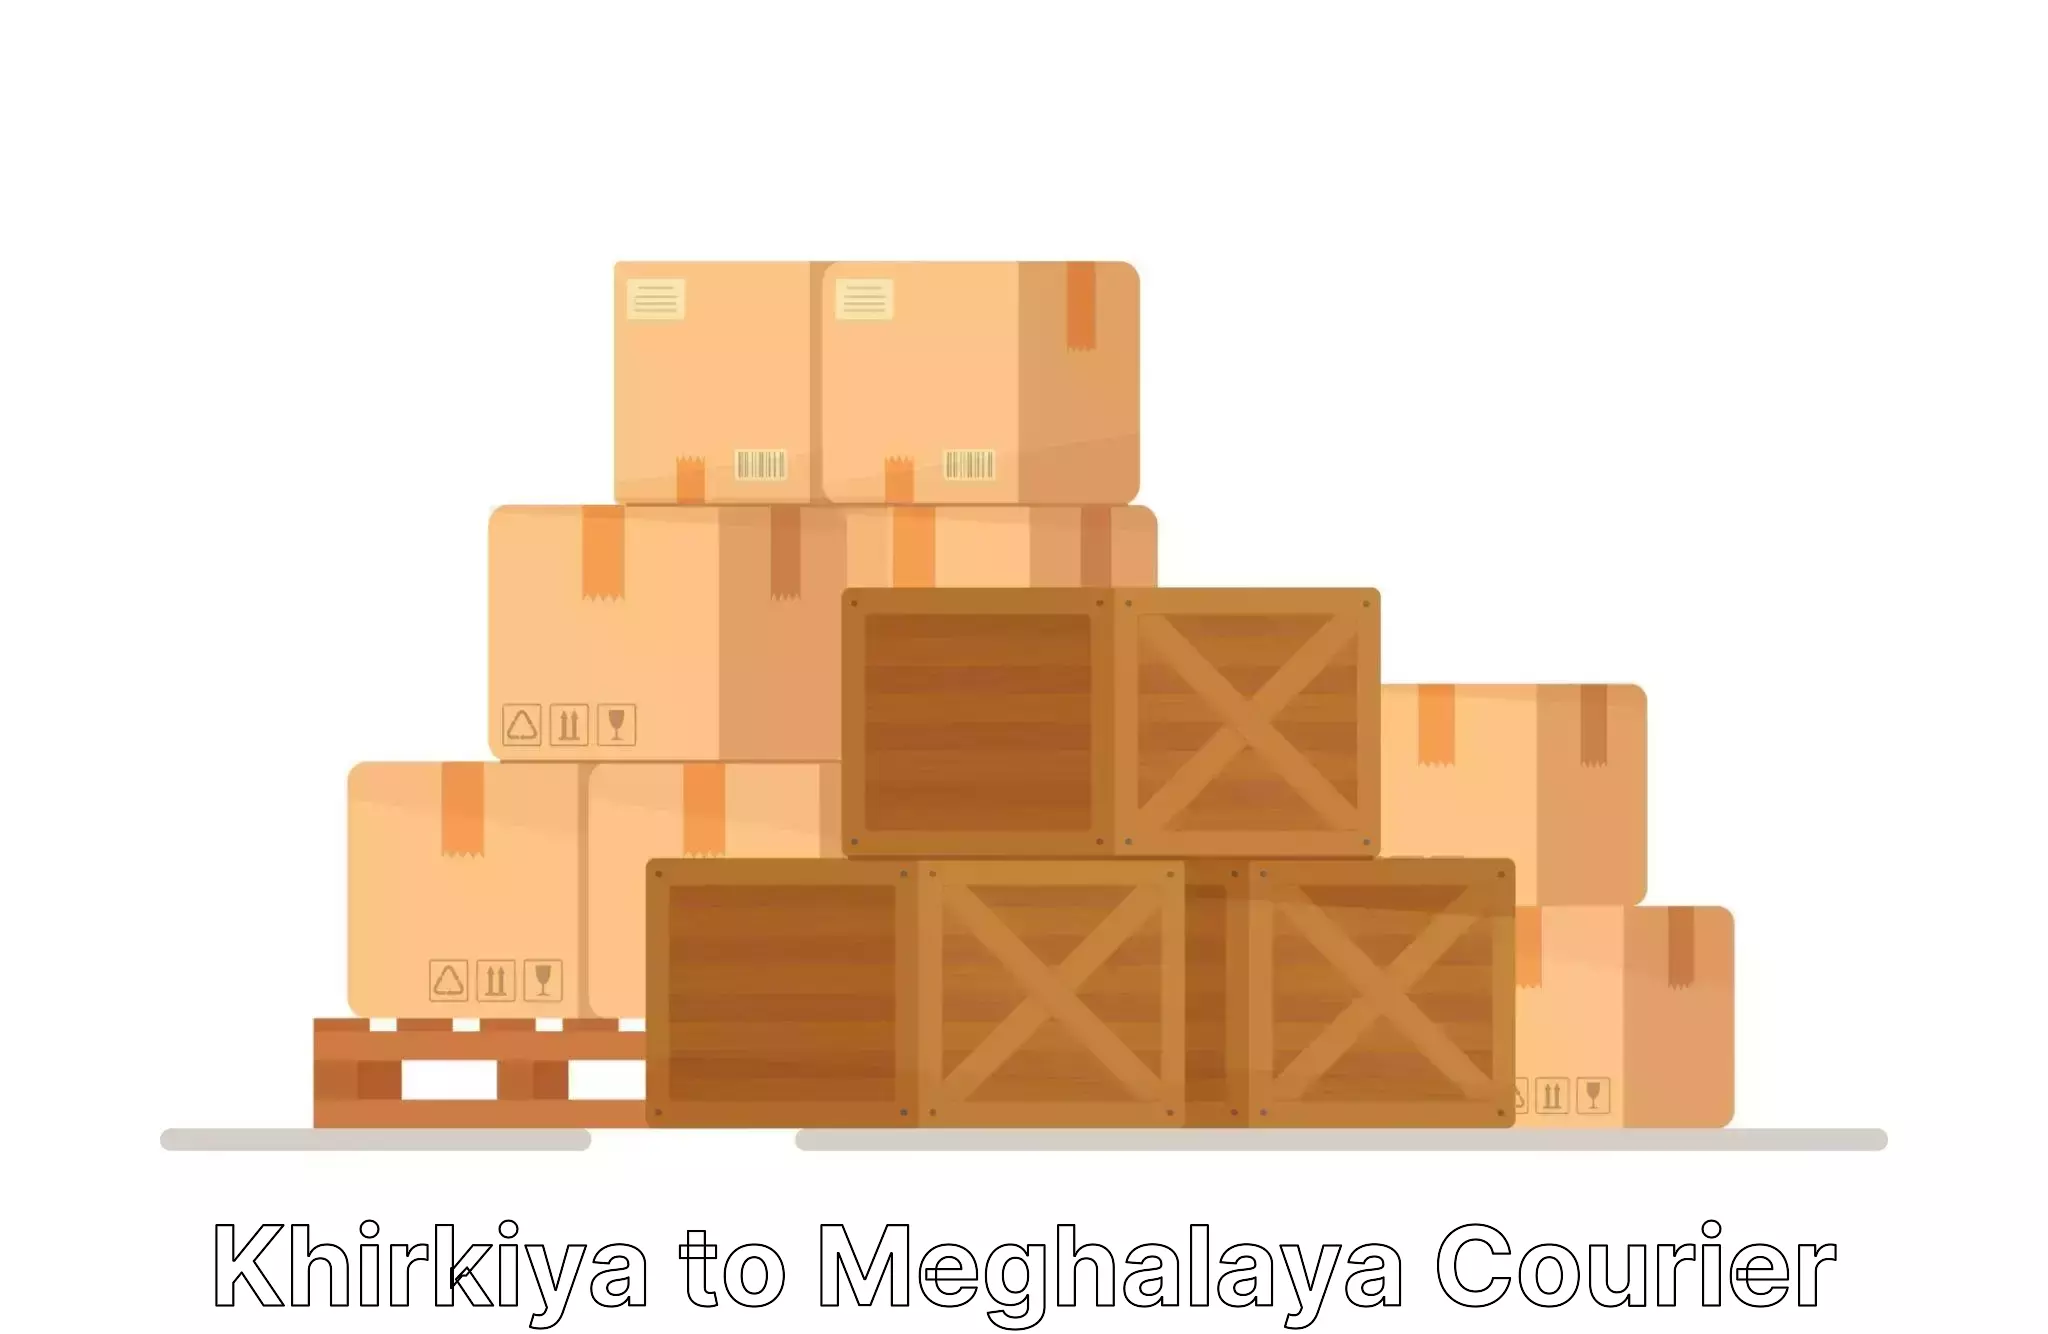 Furniture transport solutions Khirkiya to Mairang